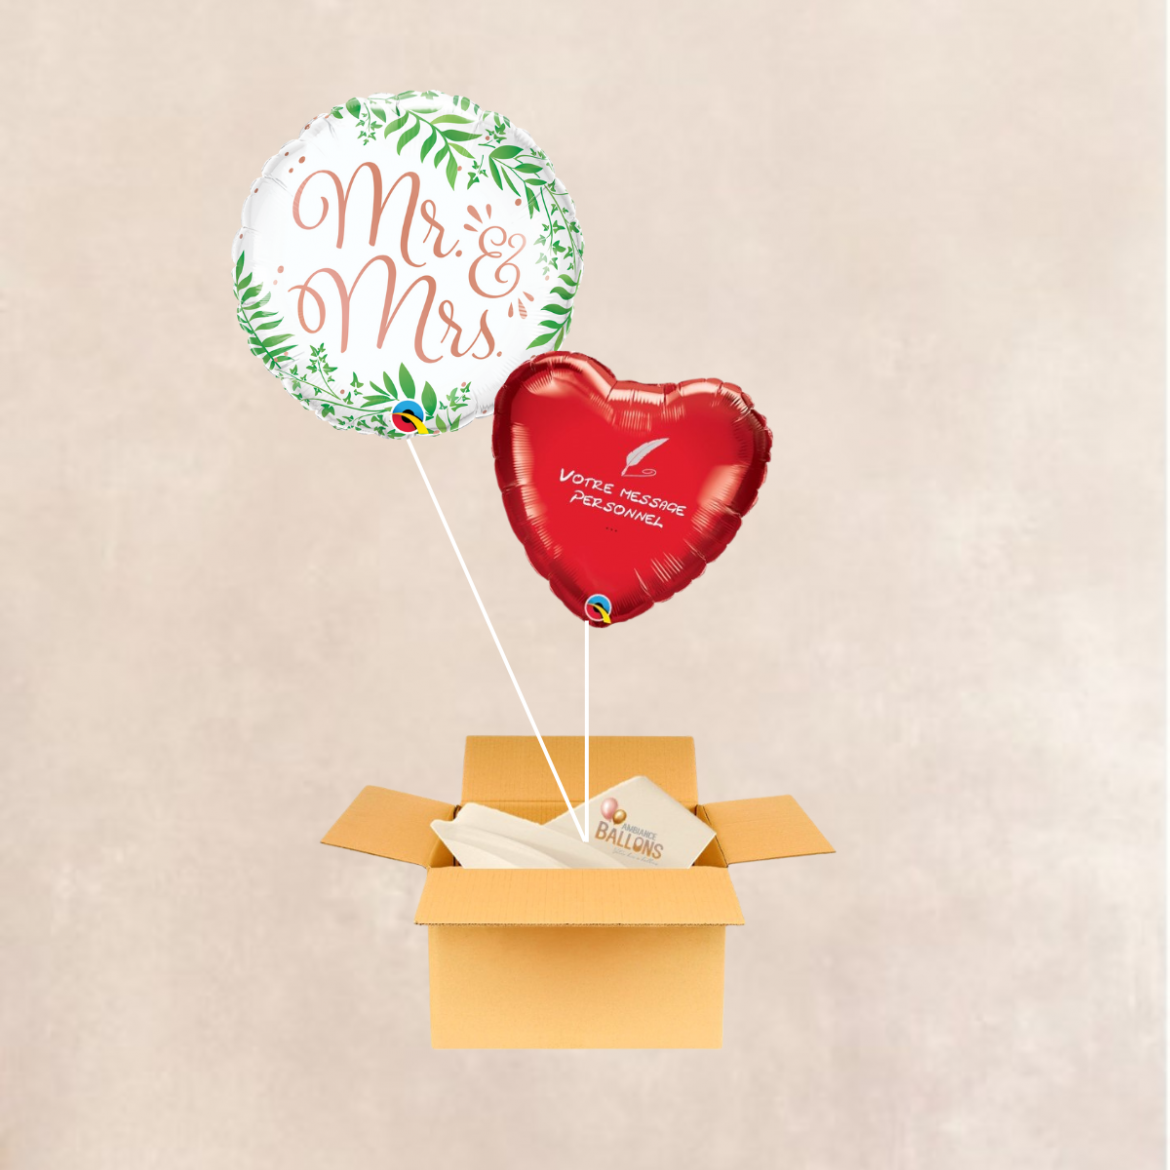 Ballon Postal Mariage : Faire votre demande